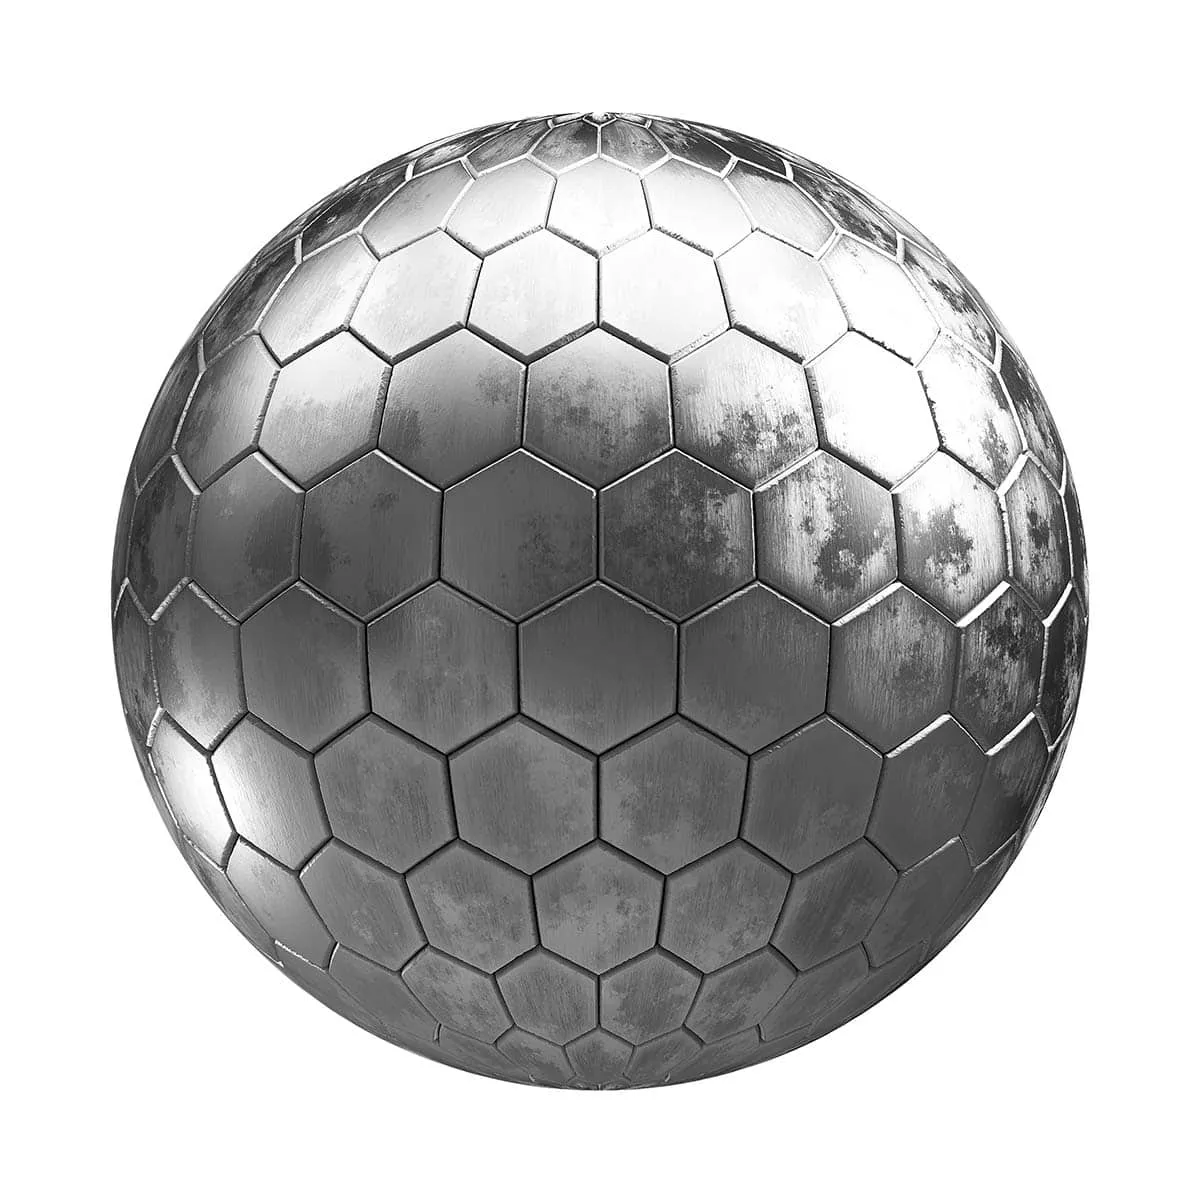 PBR Textures Volume 26 – Metals – 4K – 8K – hexagonal_metal_tiles_26_49